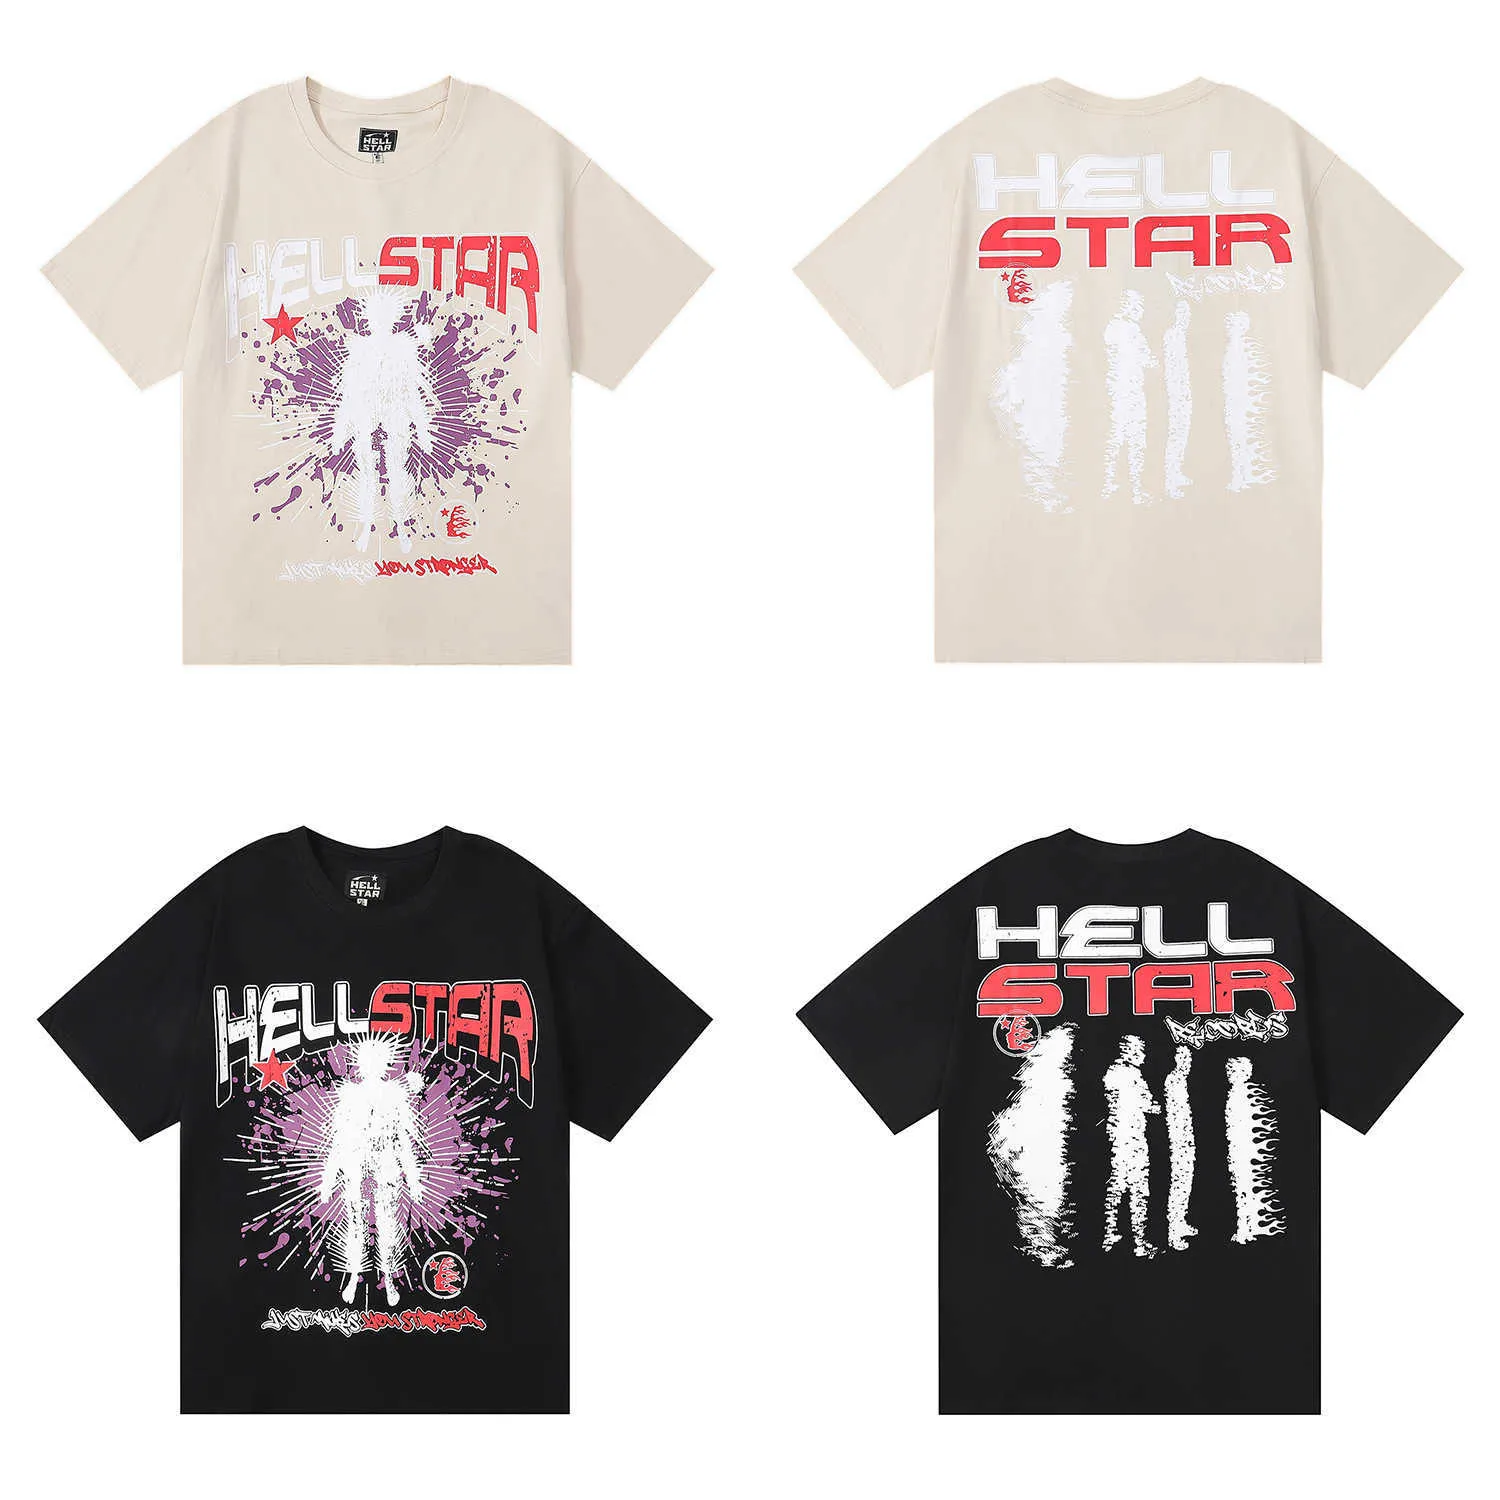 アメリカのファッションブランドHellstar抽象キャラクタープリントラップIns男性と女性のためのカジュアルな短袖Tシャツ